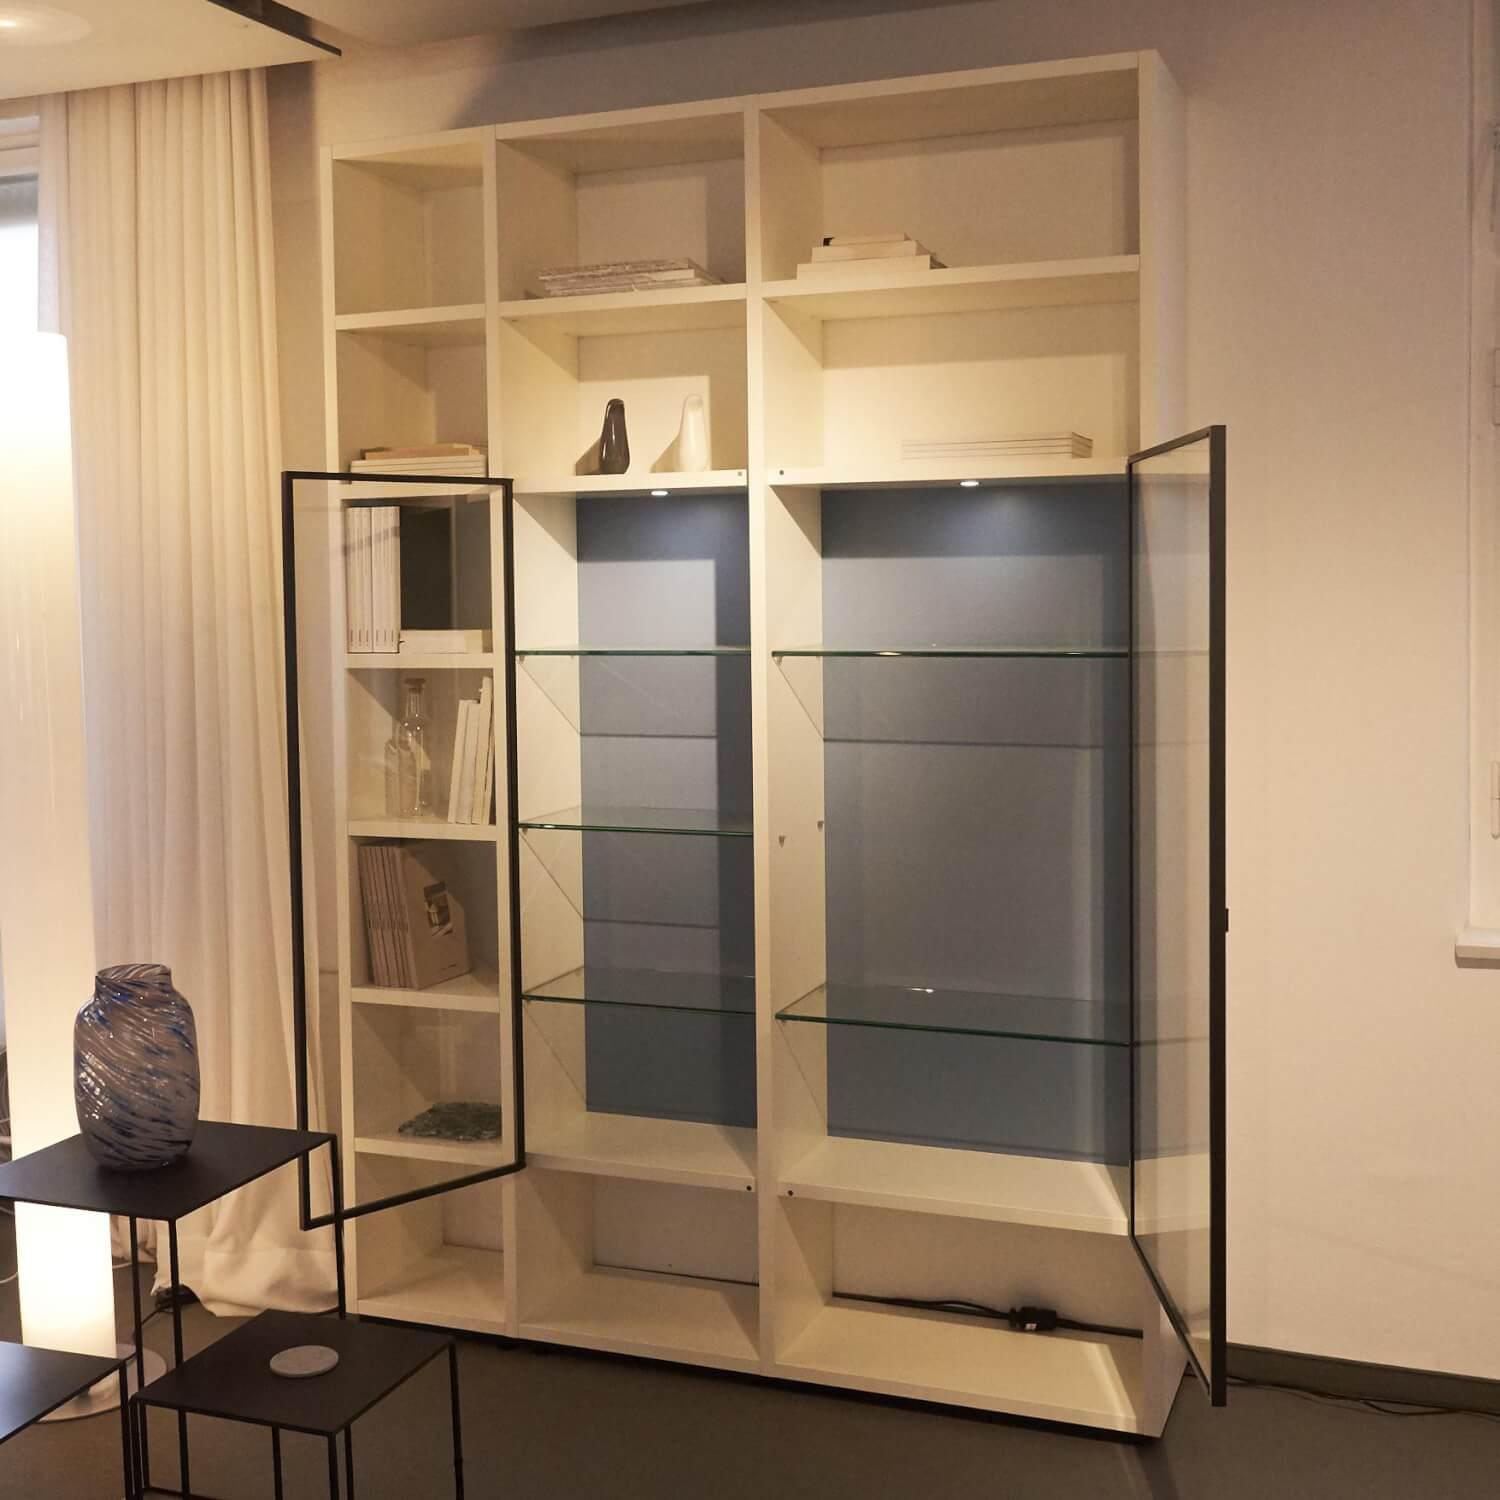 Regal System Mattlackiert Weiß Türen Aus Iron Glas Transparent Mit Beleuchtung